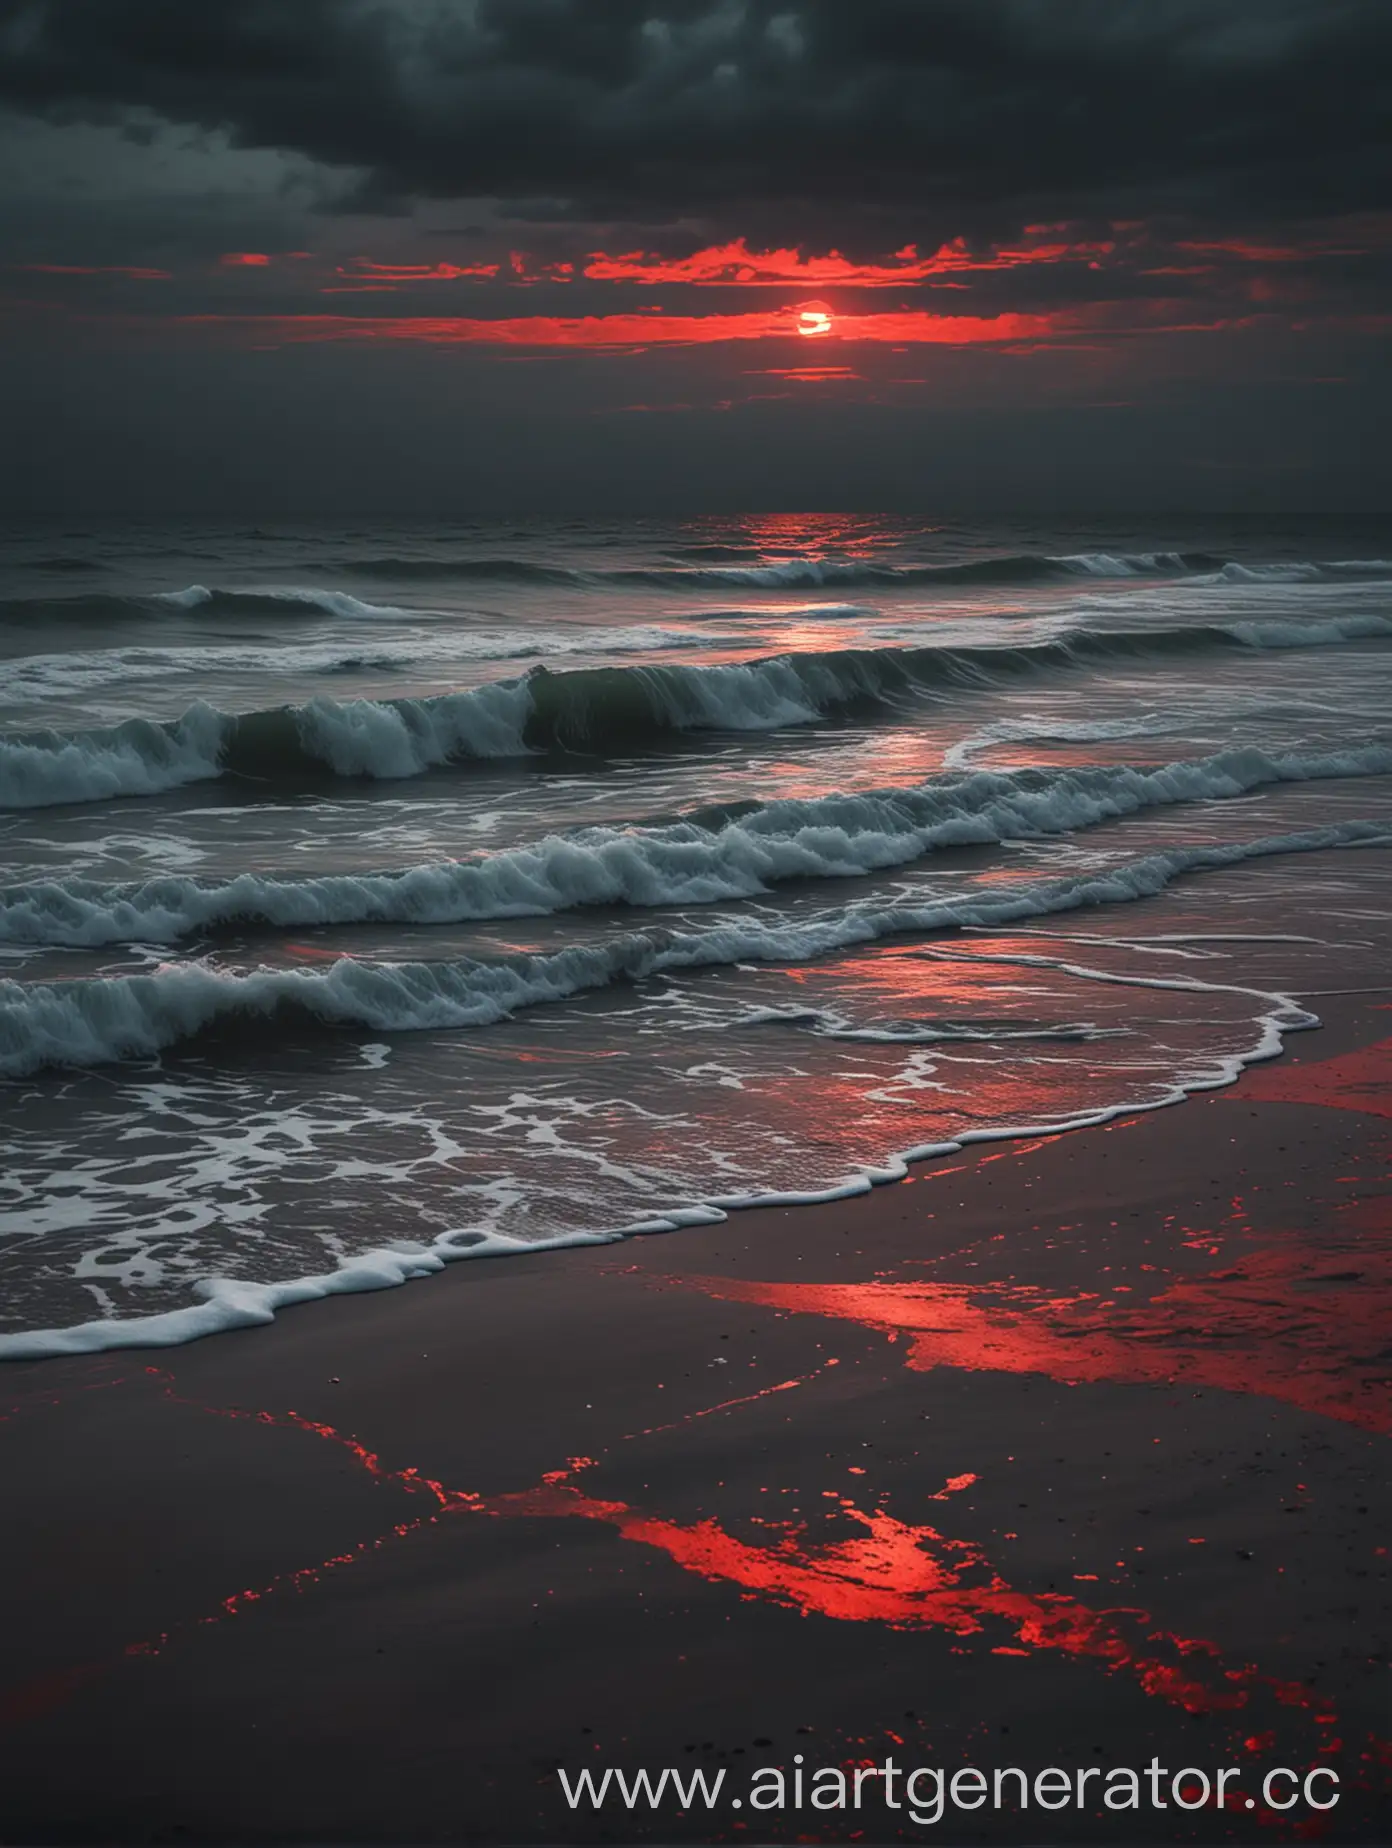 тёмное море и пляж с красными вкрапинками в стиле размытосте и мультик